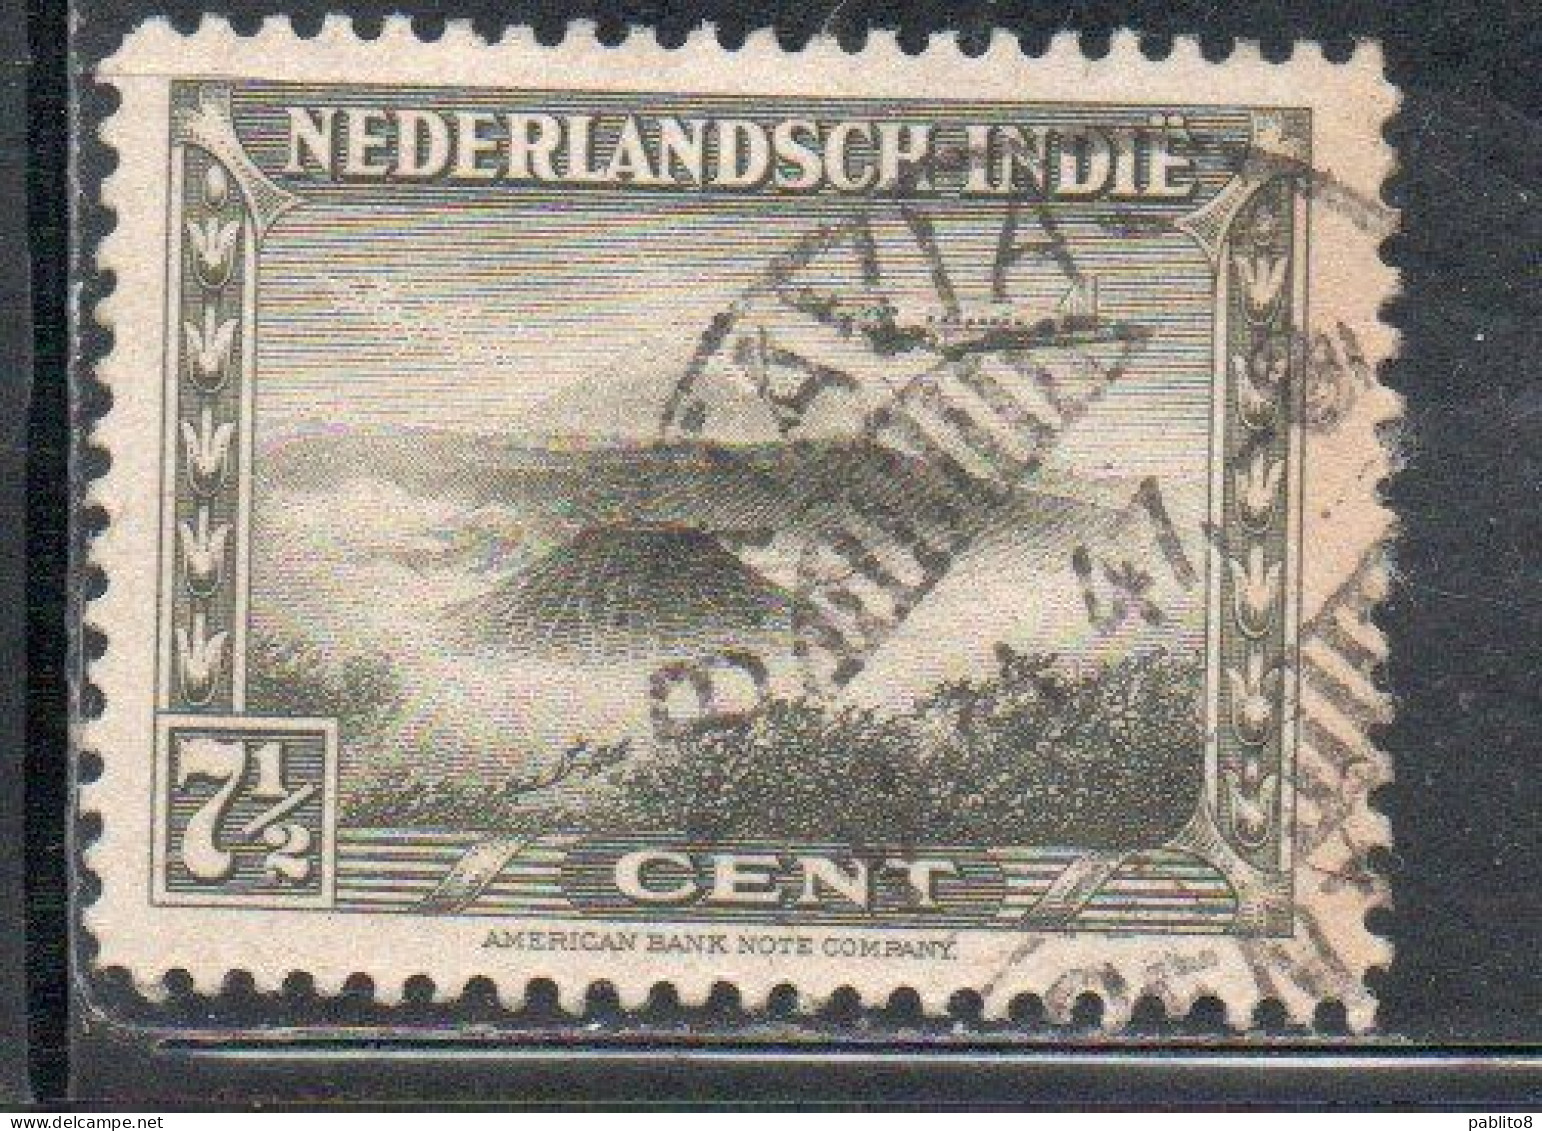 DUTCH INDIA INDIE INDE NEDERLANDS HOLLAND OLANDESI NETHERLANDS INDIES 1945 1946 PLANE OVER BROMO VOLCANO 7 1/2c USED - Nederlands-Indië